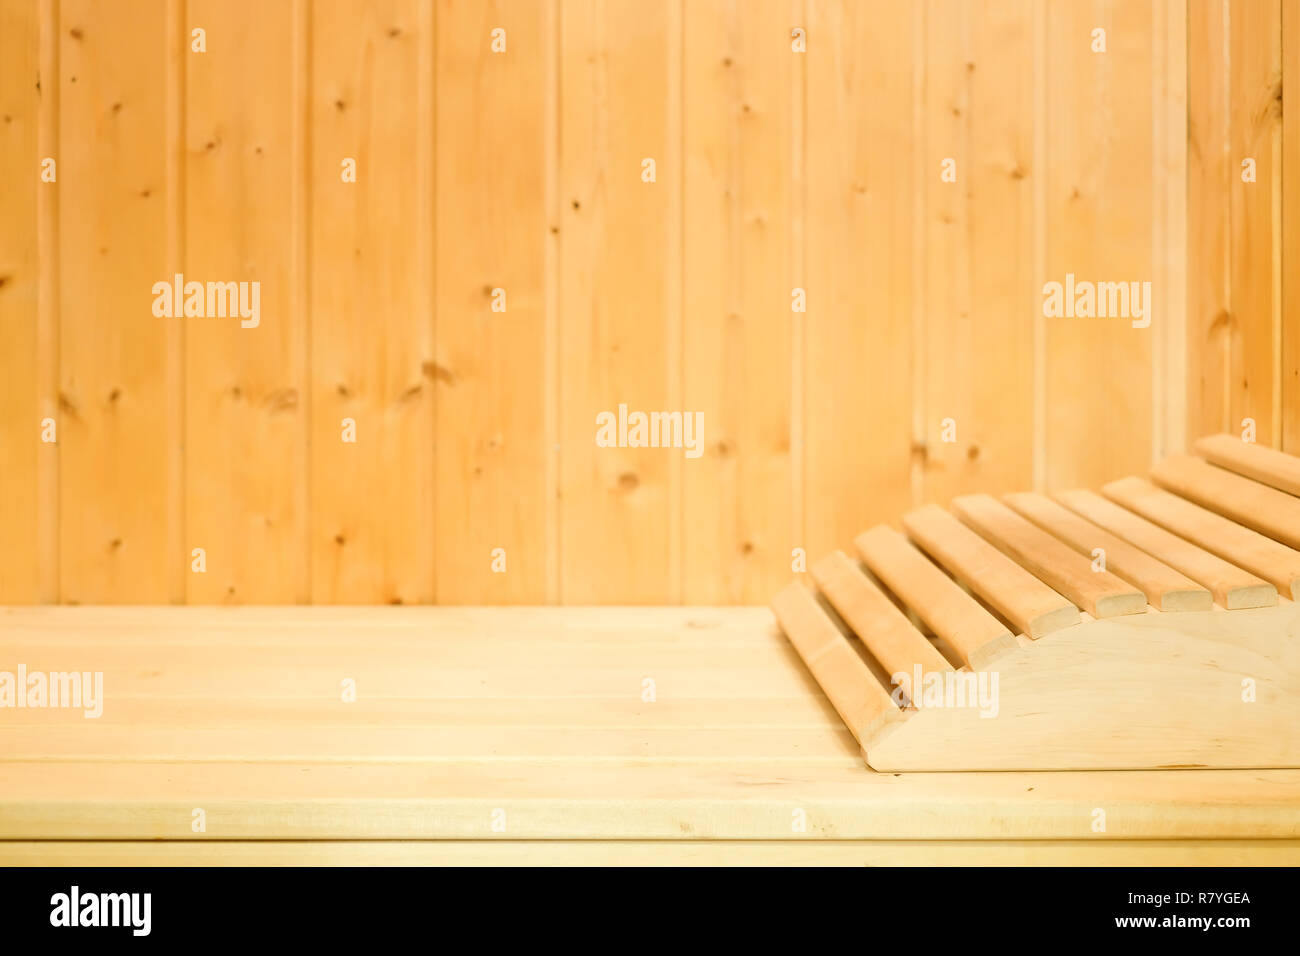 Interno del tradizionale e classica sauna finlandese in legno massiccio con poggiatesta. Il riposo e il relax nella spa per mantenere caldo il freddo inverno Foto Stock